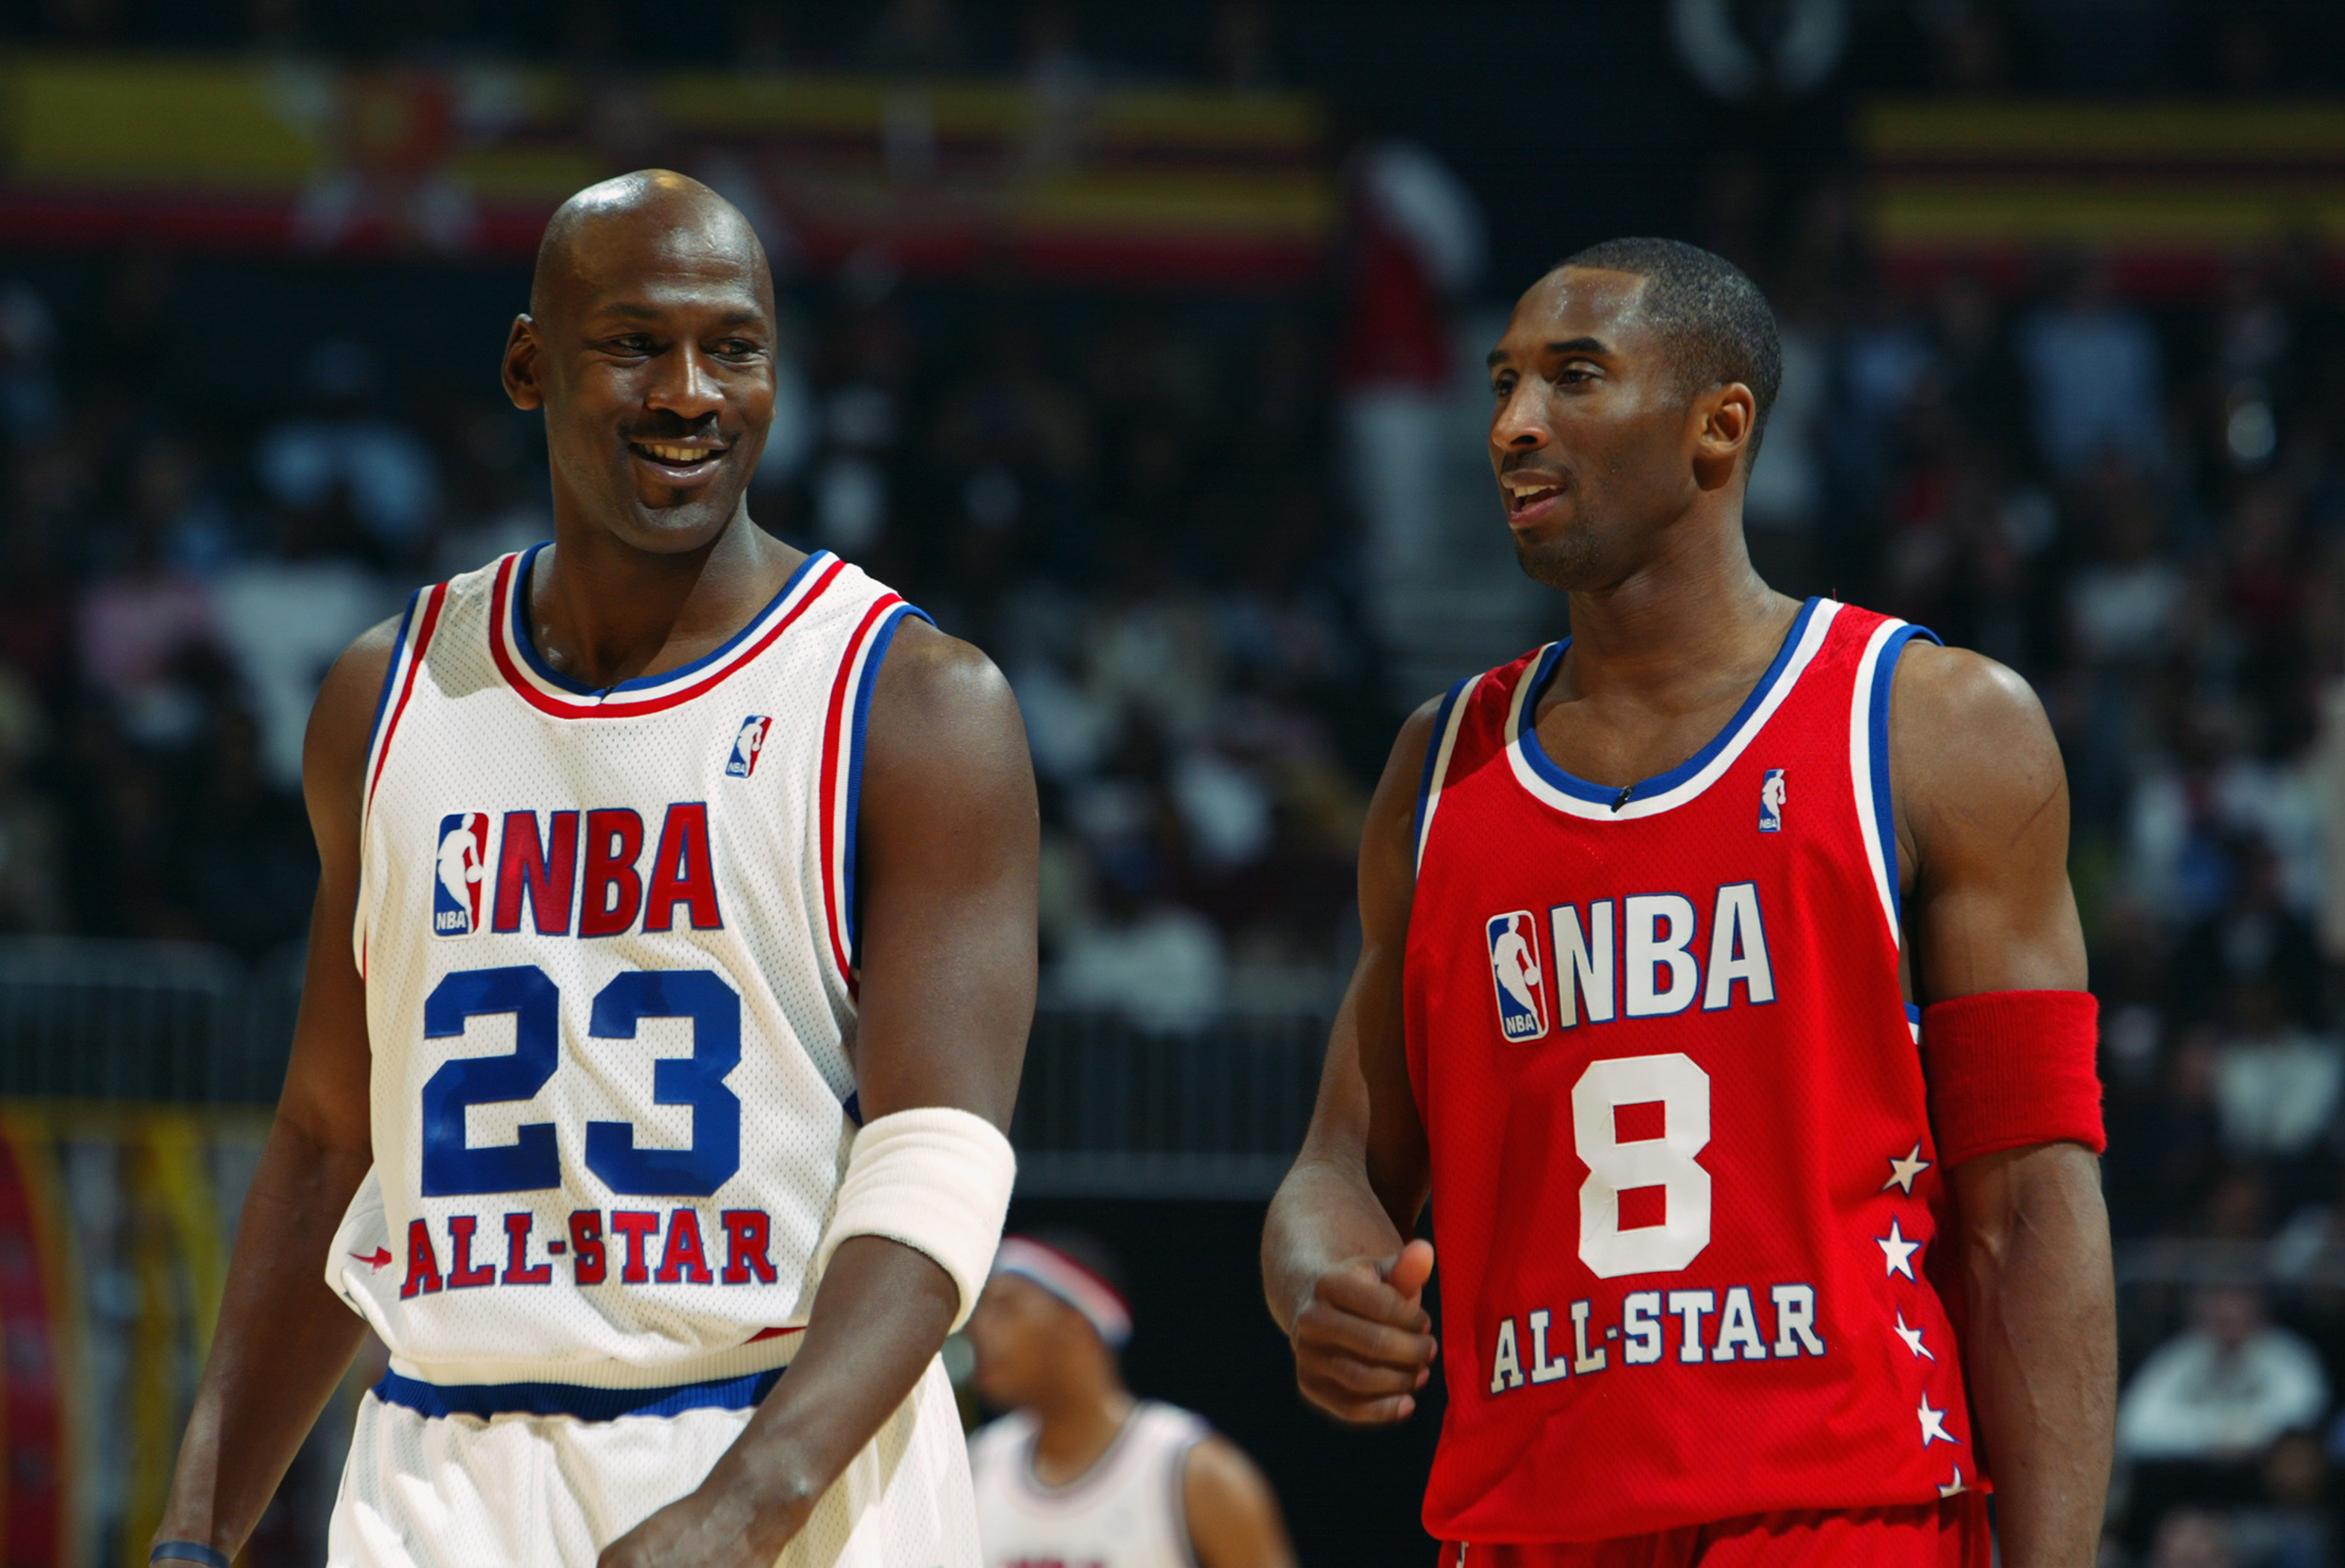 Michael Jordan vs. Kobe Bryant and the 